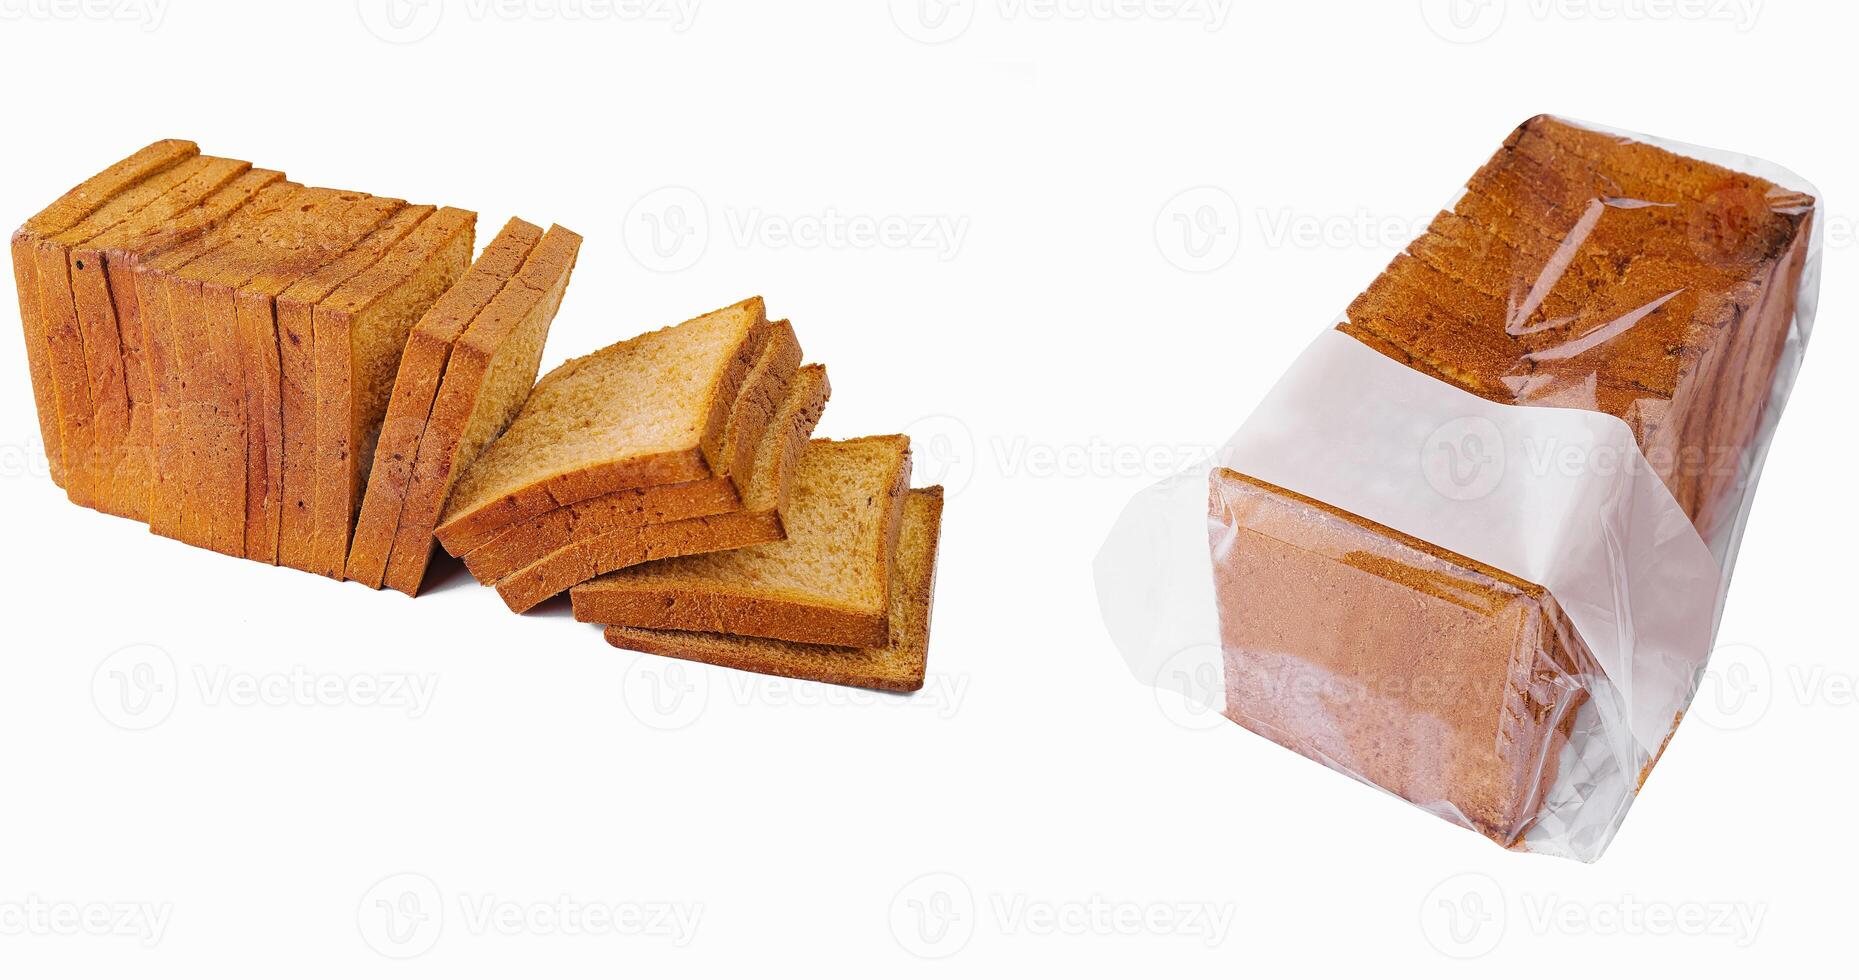 cerca arriba de blanco rebanado brindis un pan en transparente embalaje foto